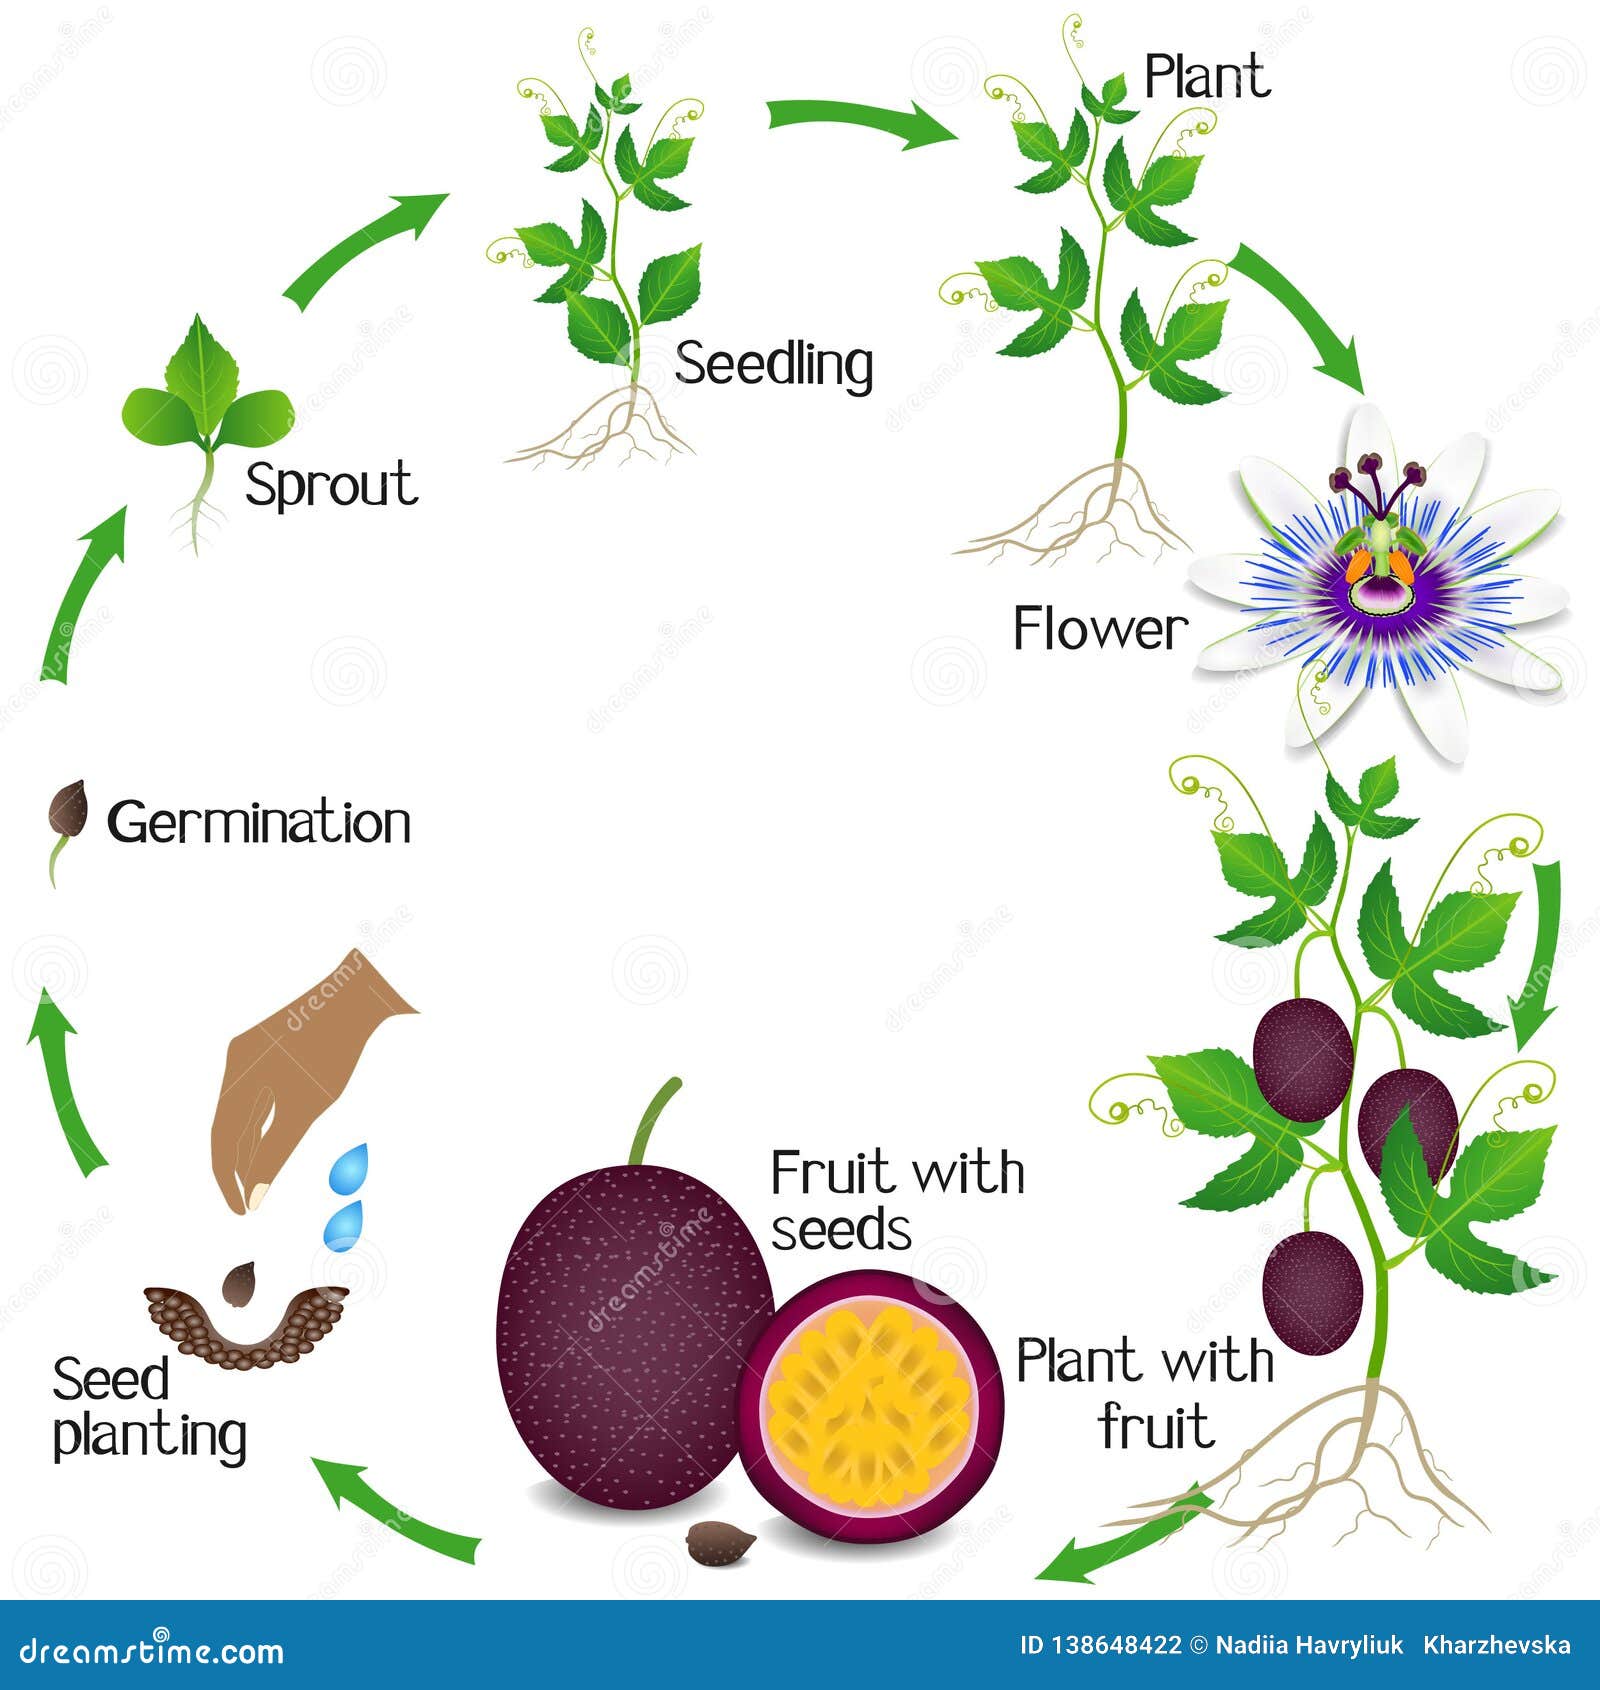 Жизненный цикл овощных растений по маркову. Жизненный цикл маракуйи. Маракуйя жизненный цикл фото. Маракуйя цветовая схема. Маракуйя размножение растения.